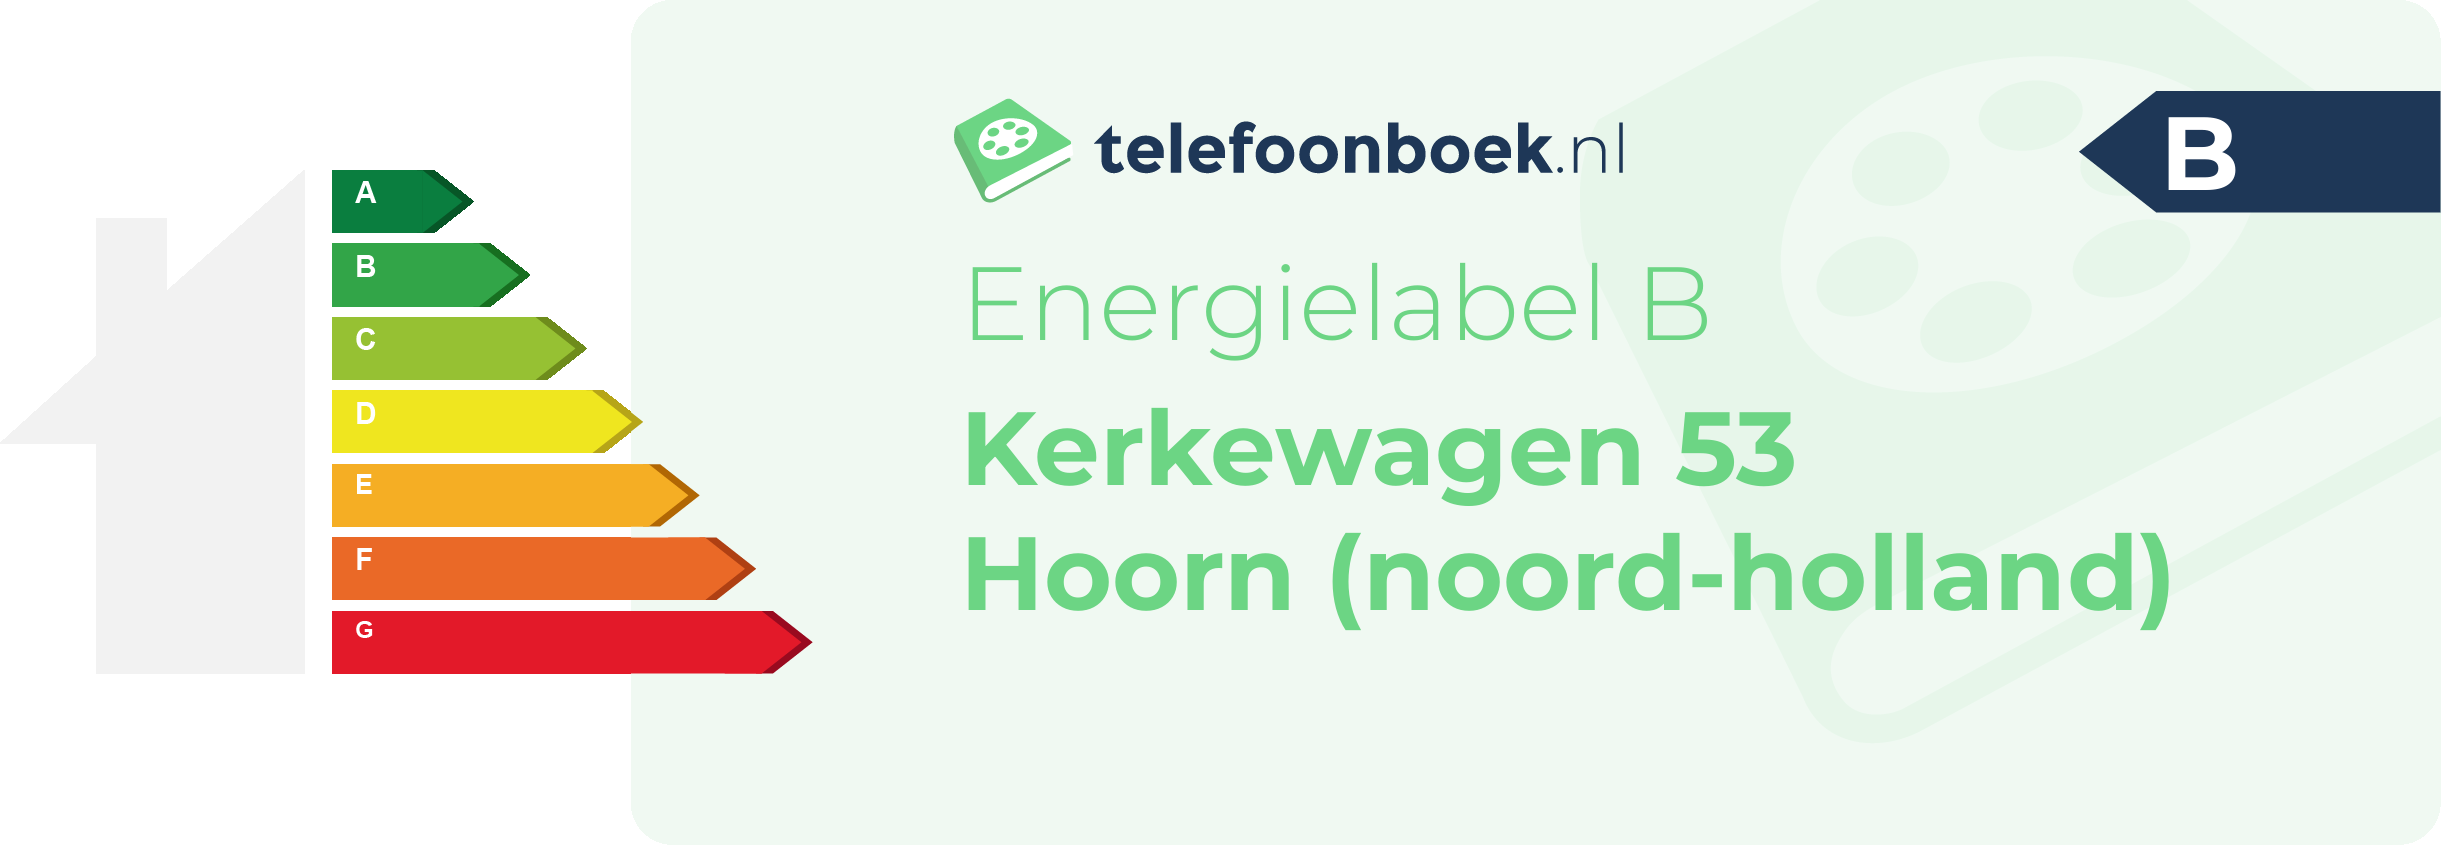 Energielabel Kerkewagen 53 Hoorn (Noord-Holland)